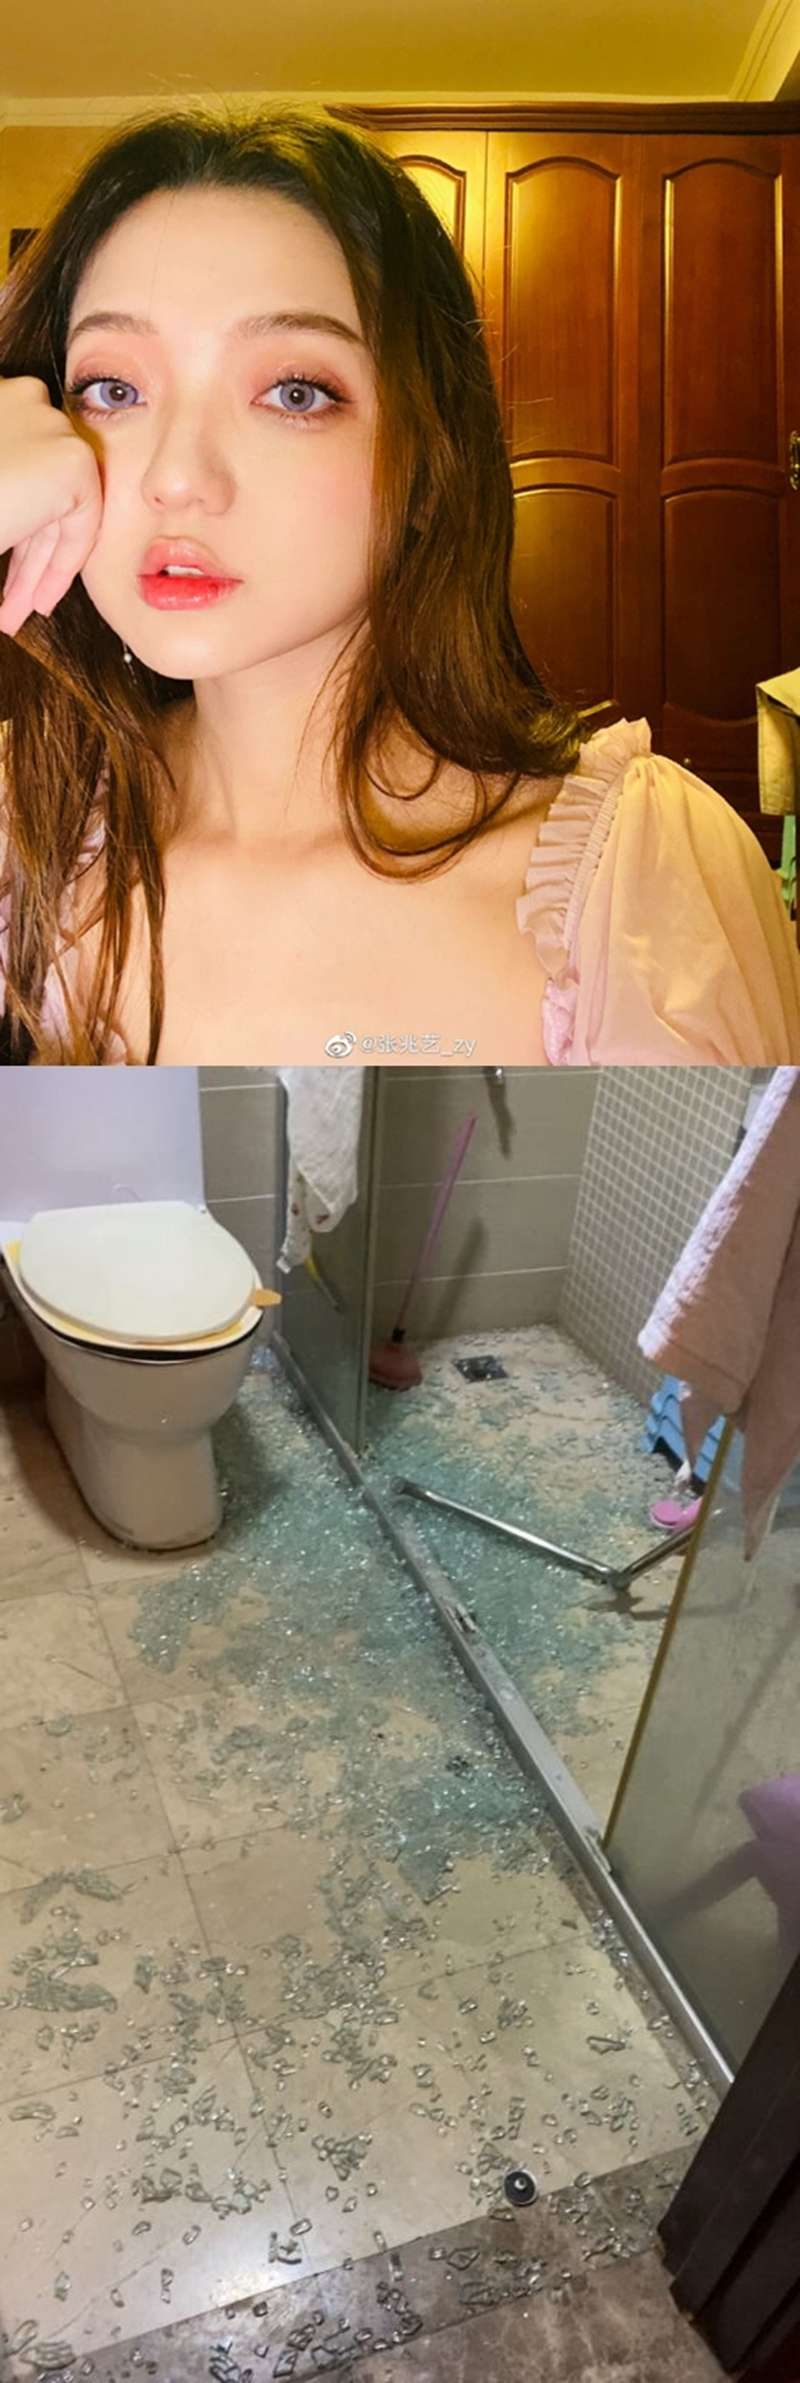 中廁所玻璃門突然炸裂導致。如今廁所裡已經一片狼藉，地上全部都是細碎的玻璃殘渣。